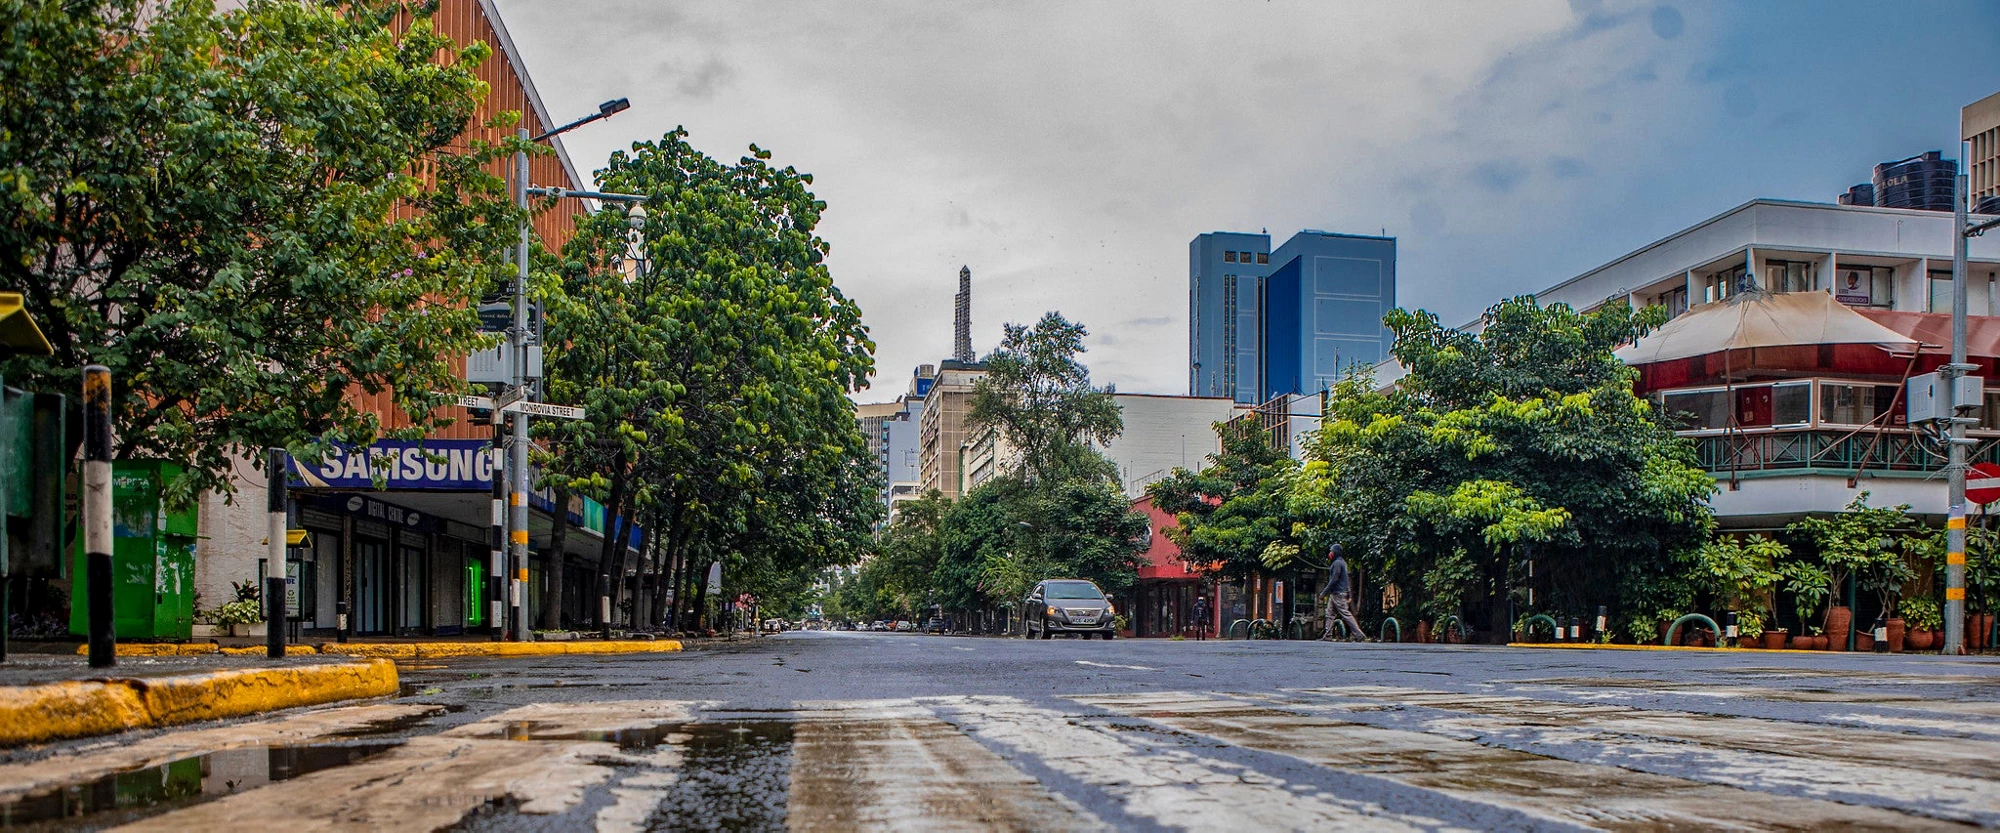 Empty street scene in Nairobi, Kenya 